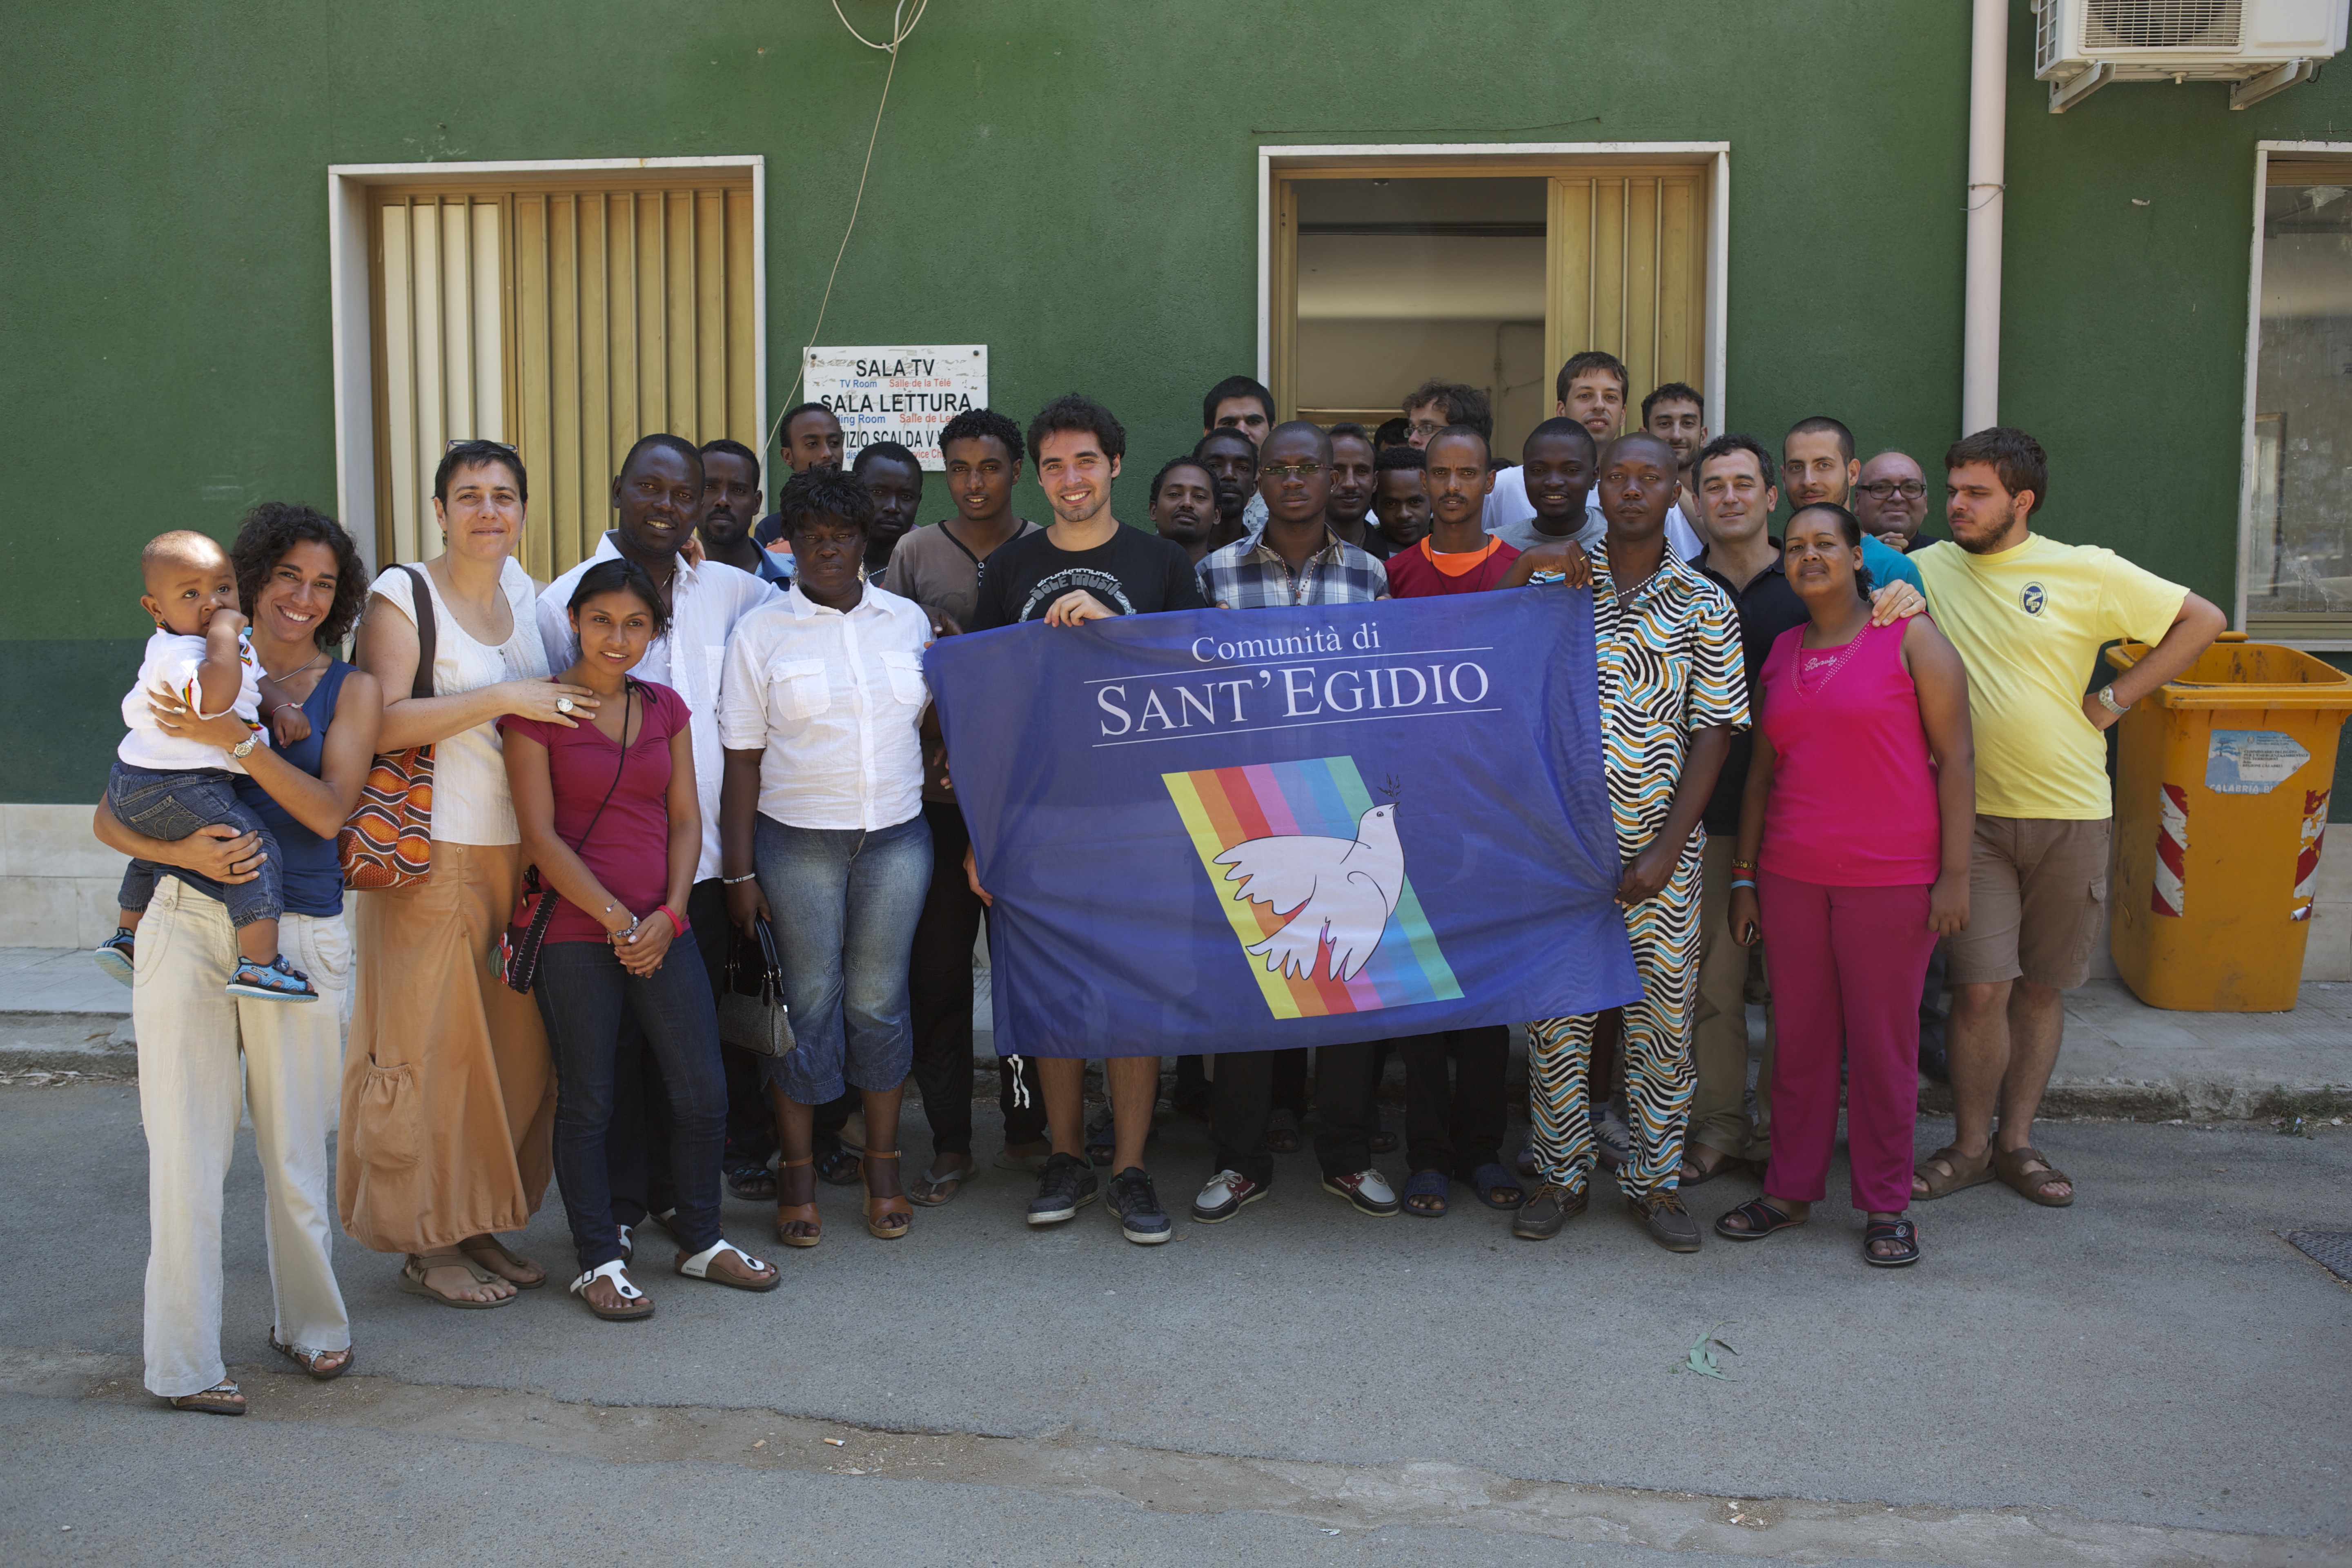 Giochi e lezioni di italiano: una settimana insieme agli immigrati nel centro di accoglienza per richiedenti asilo di Crotone